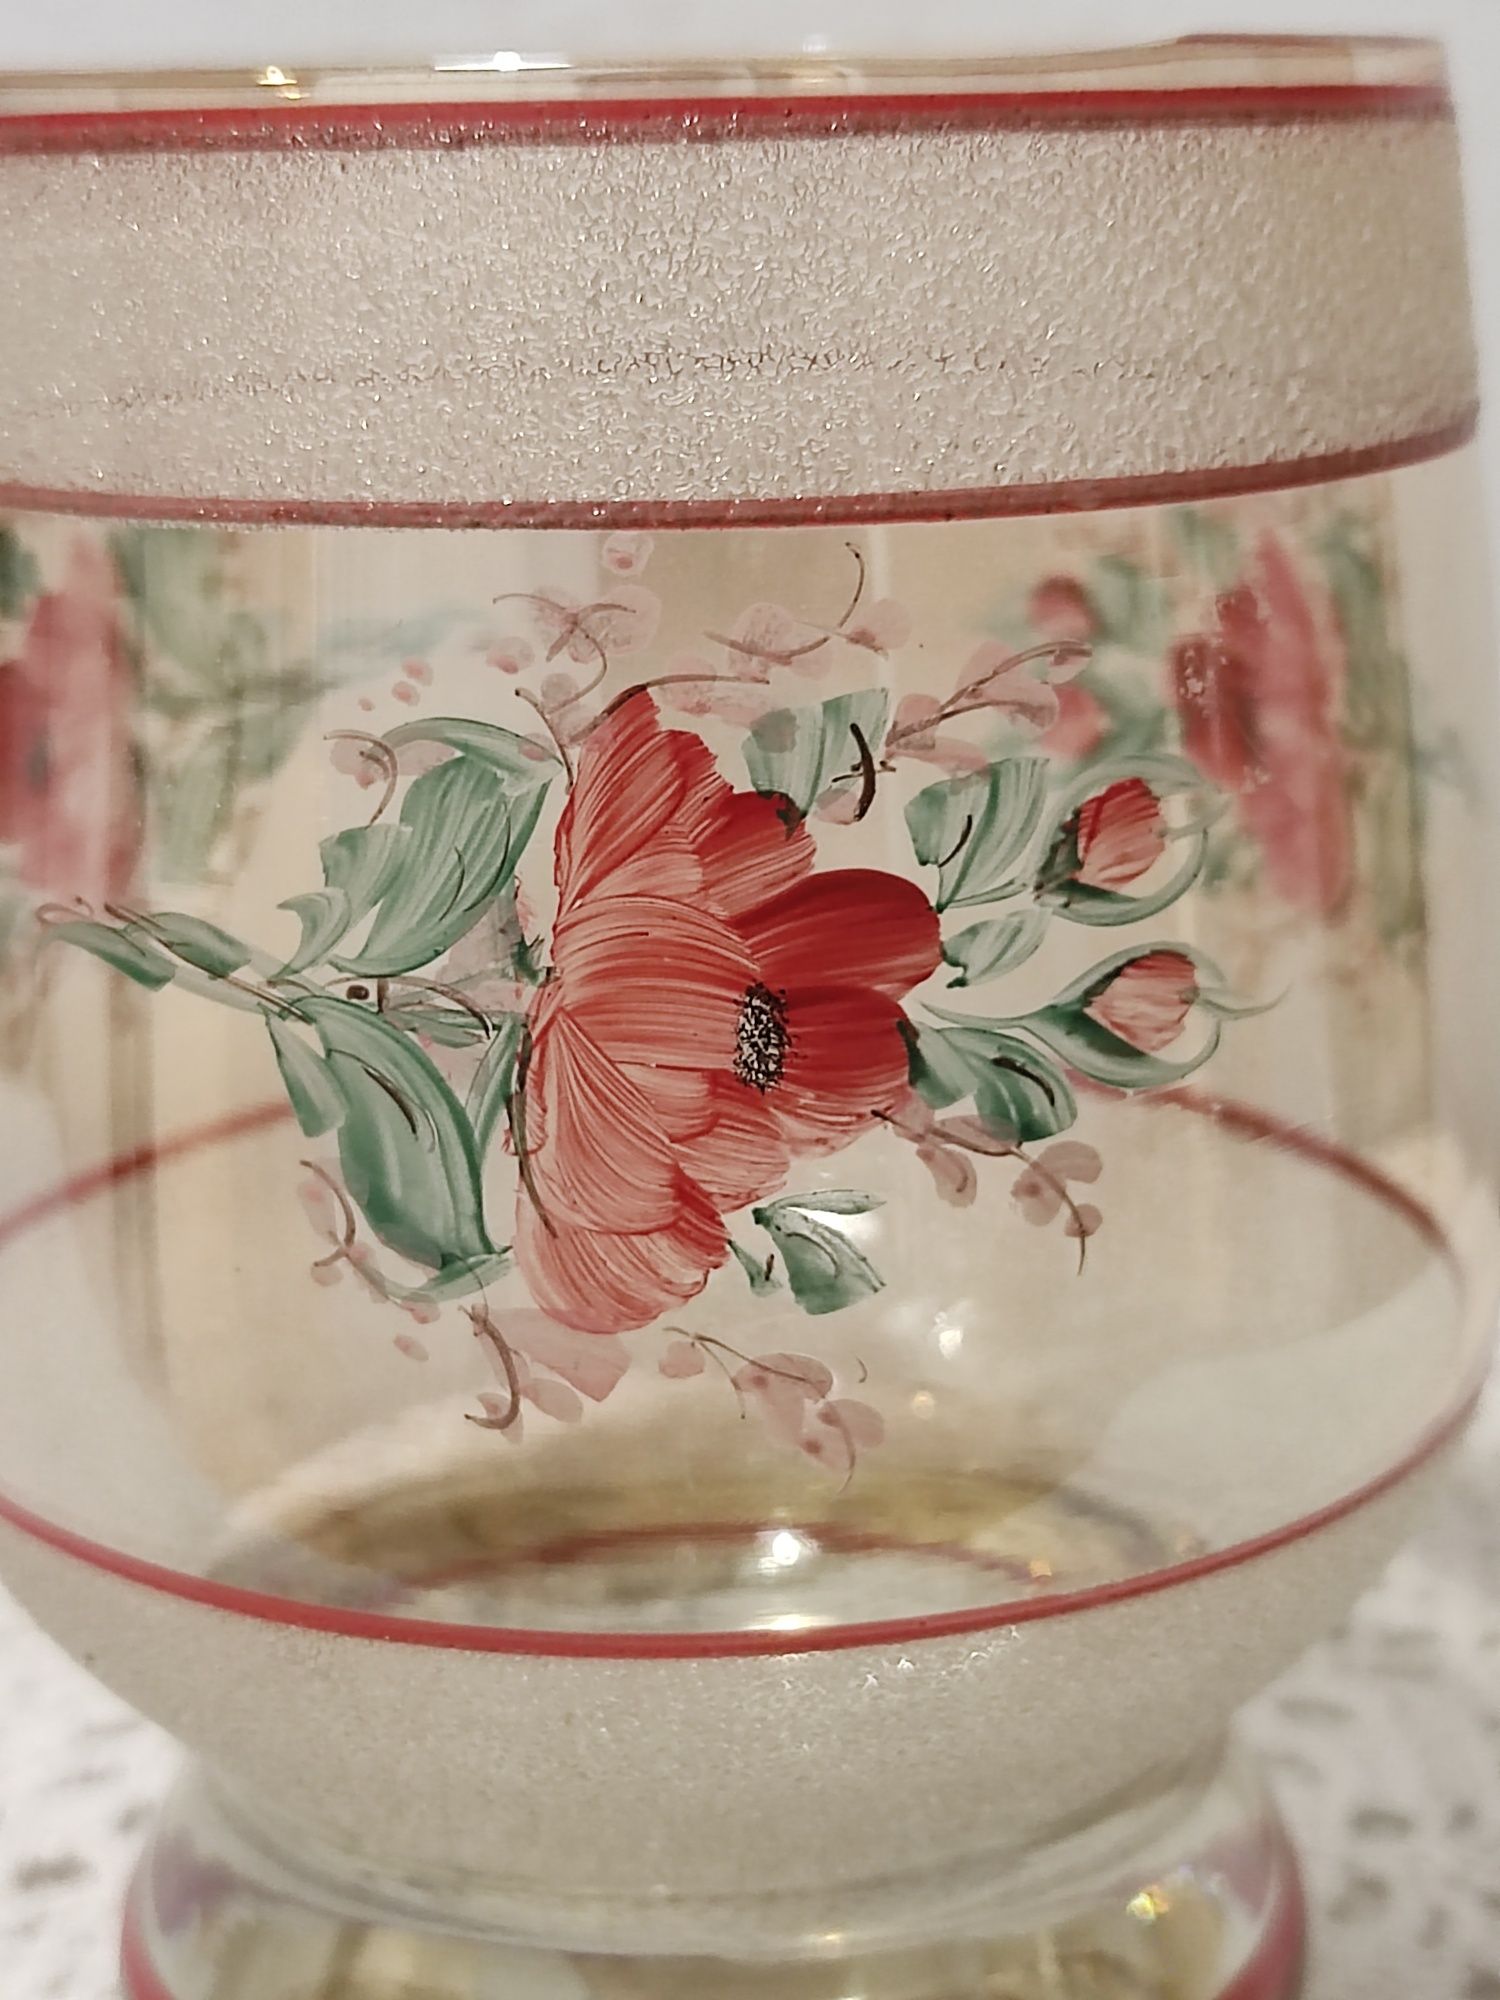 Vintage mały wazon, pucharek  w ręcznie malowane kwiaty